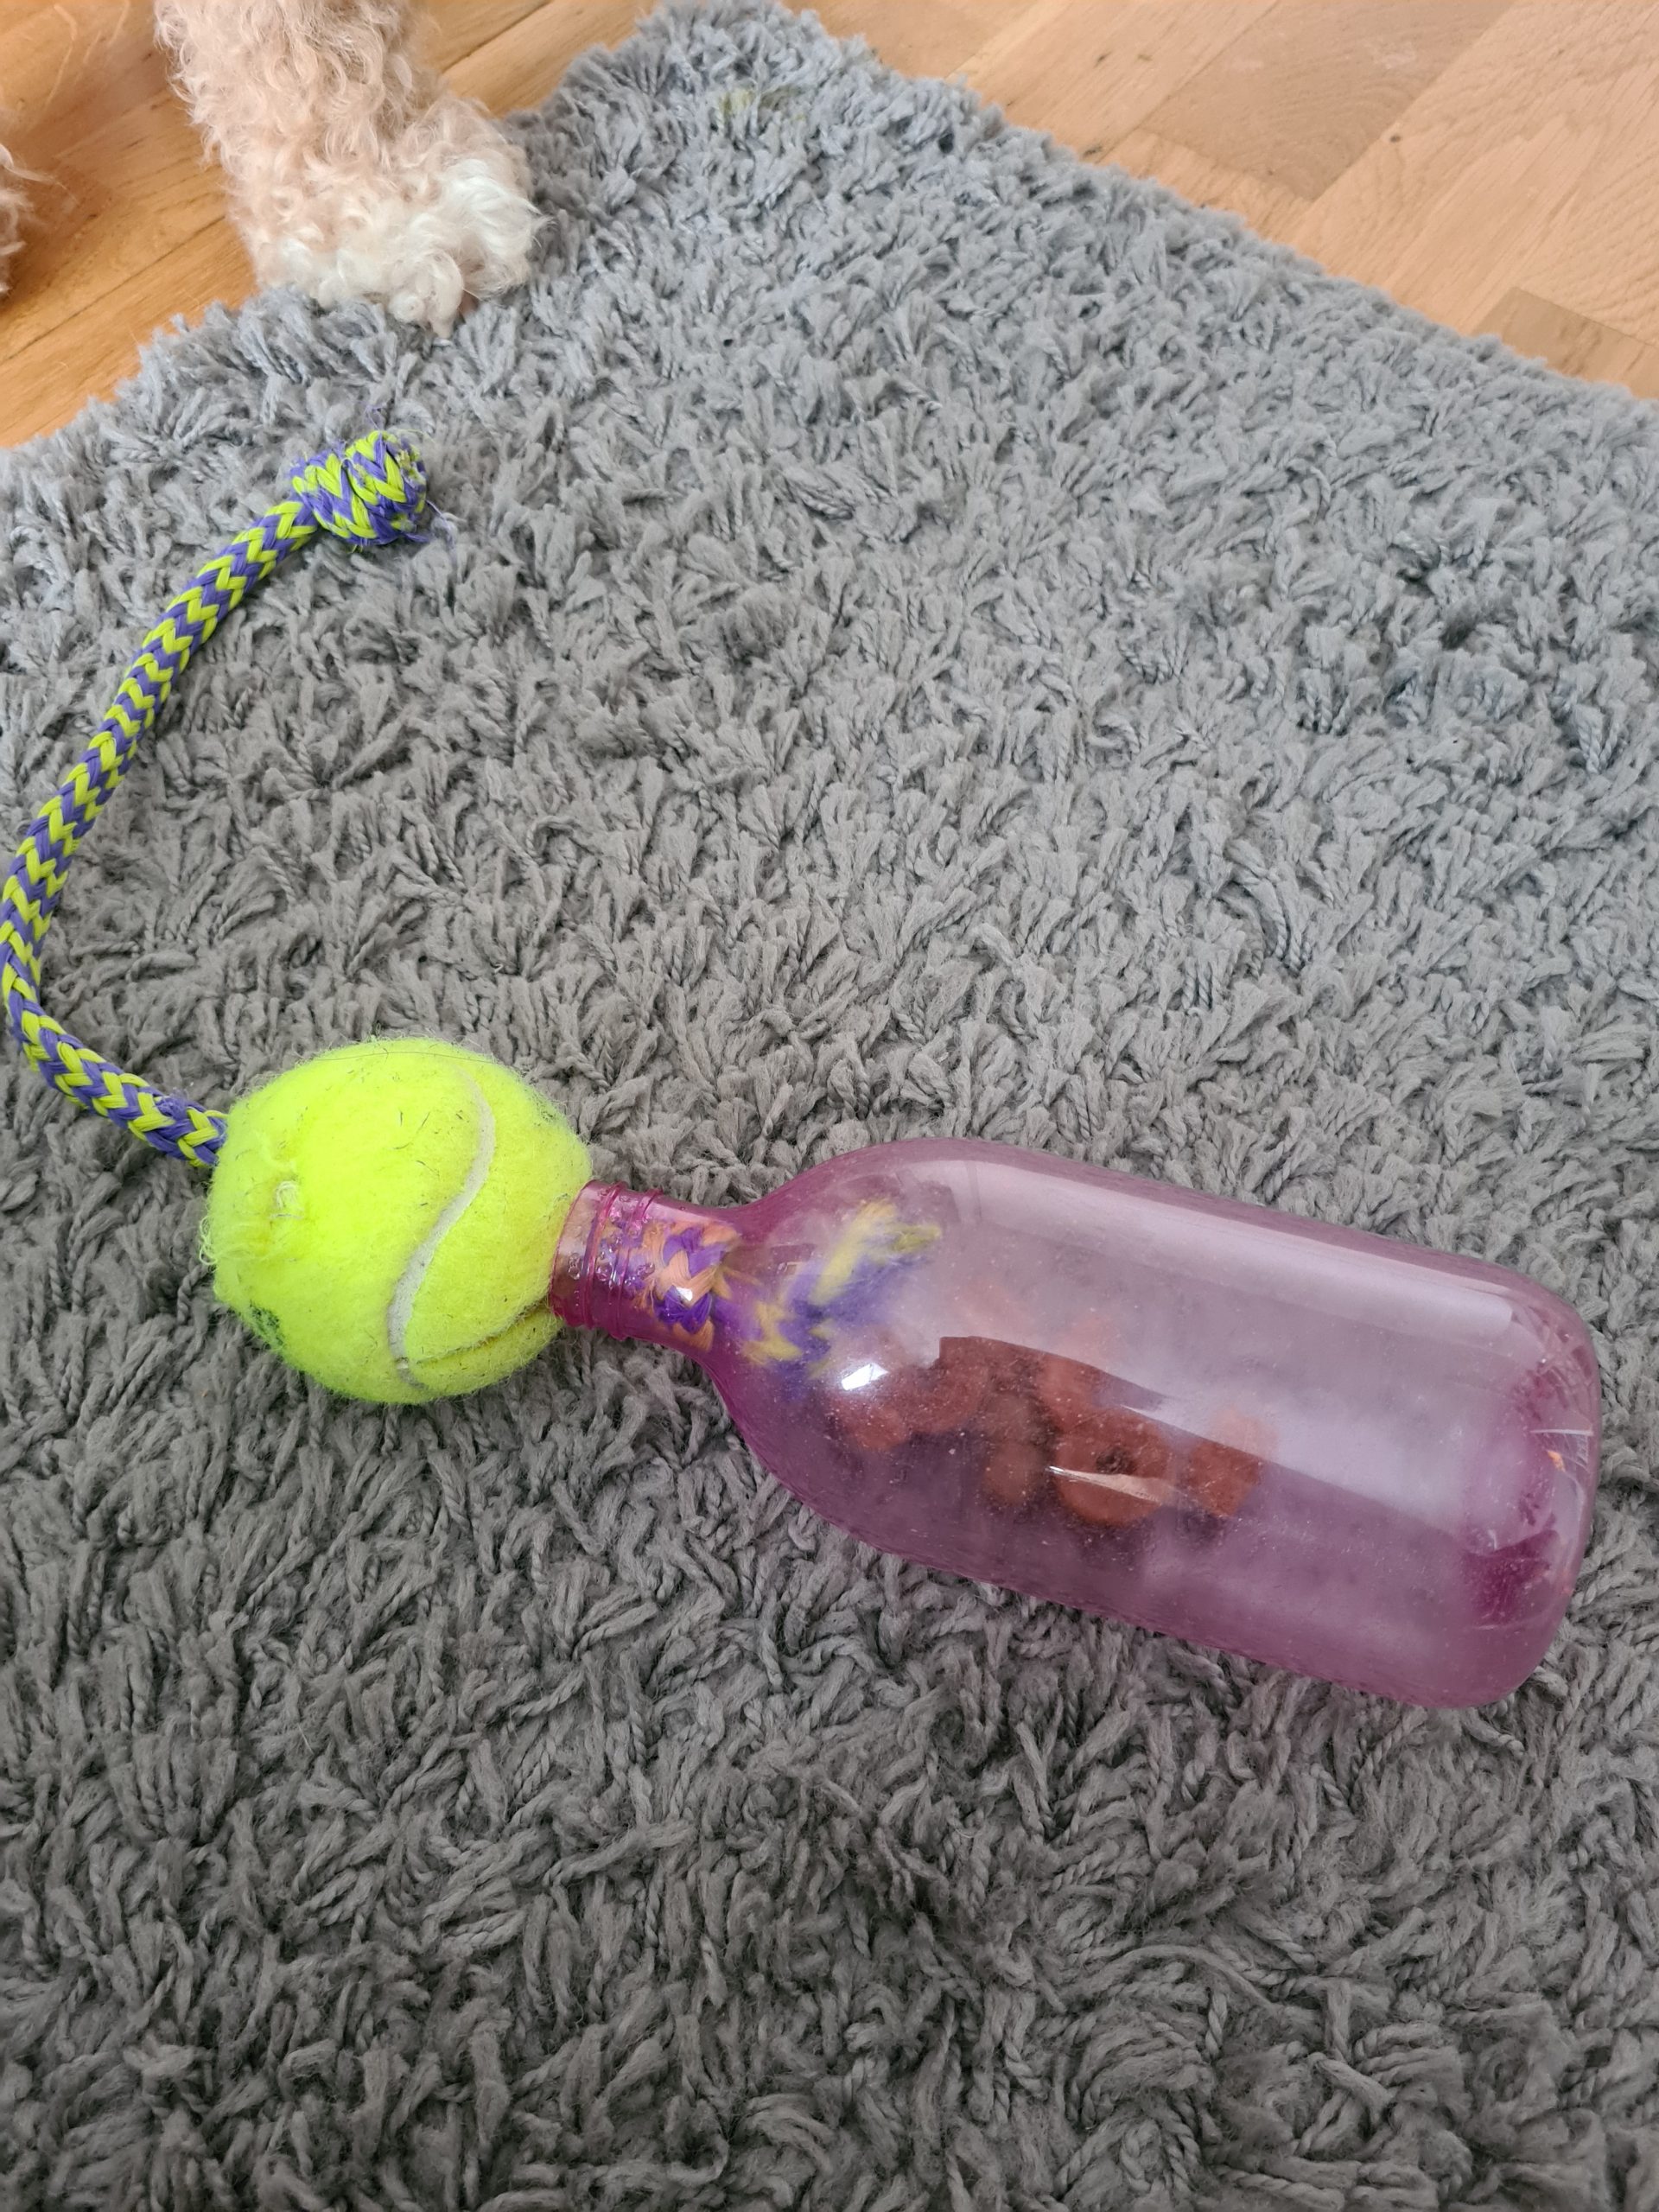 Aktivera din hund inomhus med egen hundleksak. Skapa enkelt med pet-flaska, rep och tennisboll.